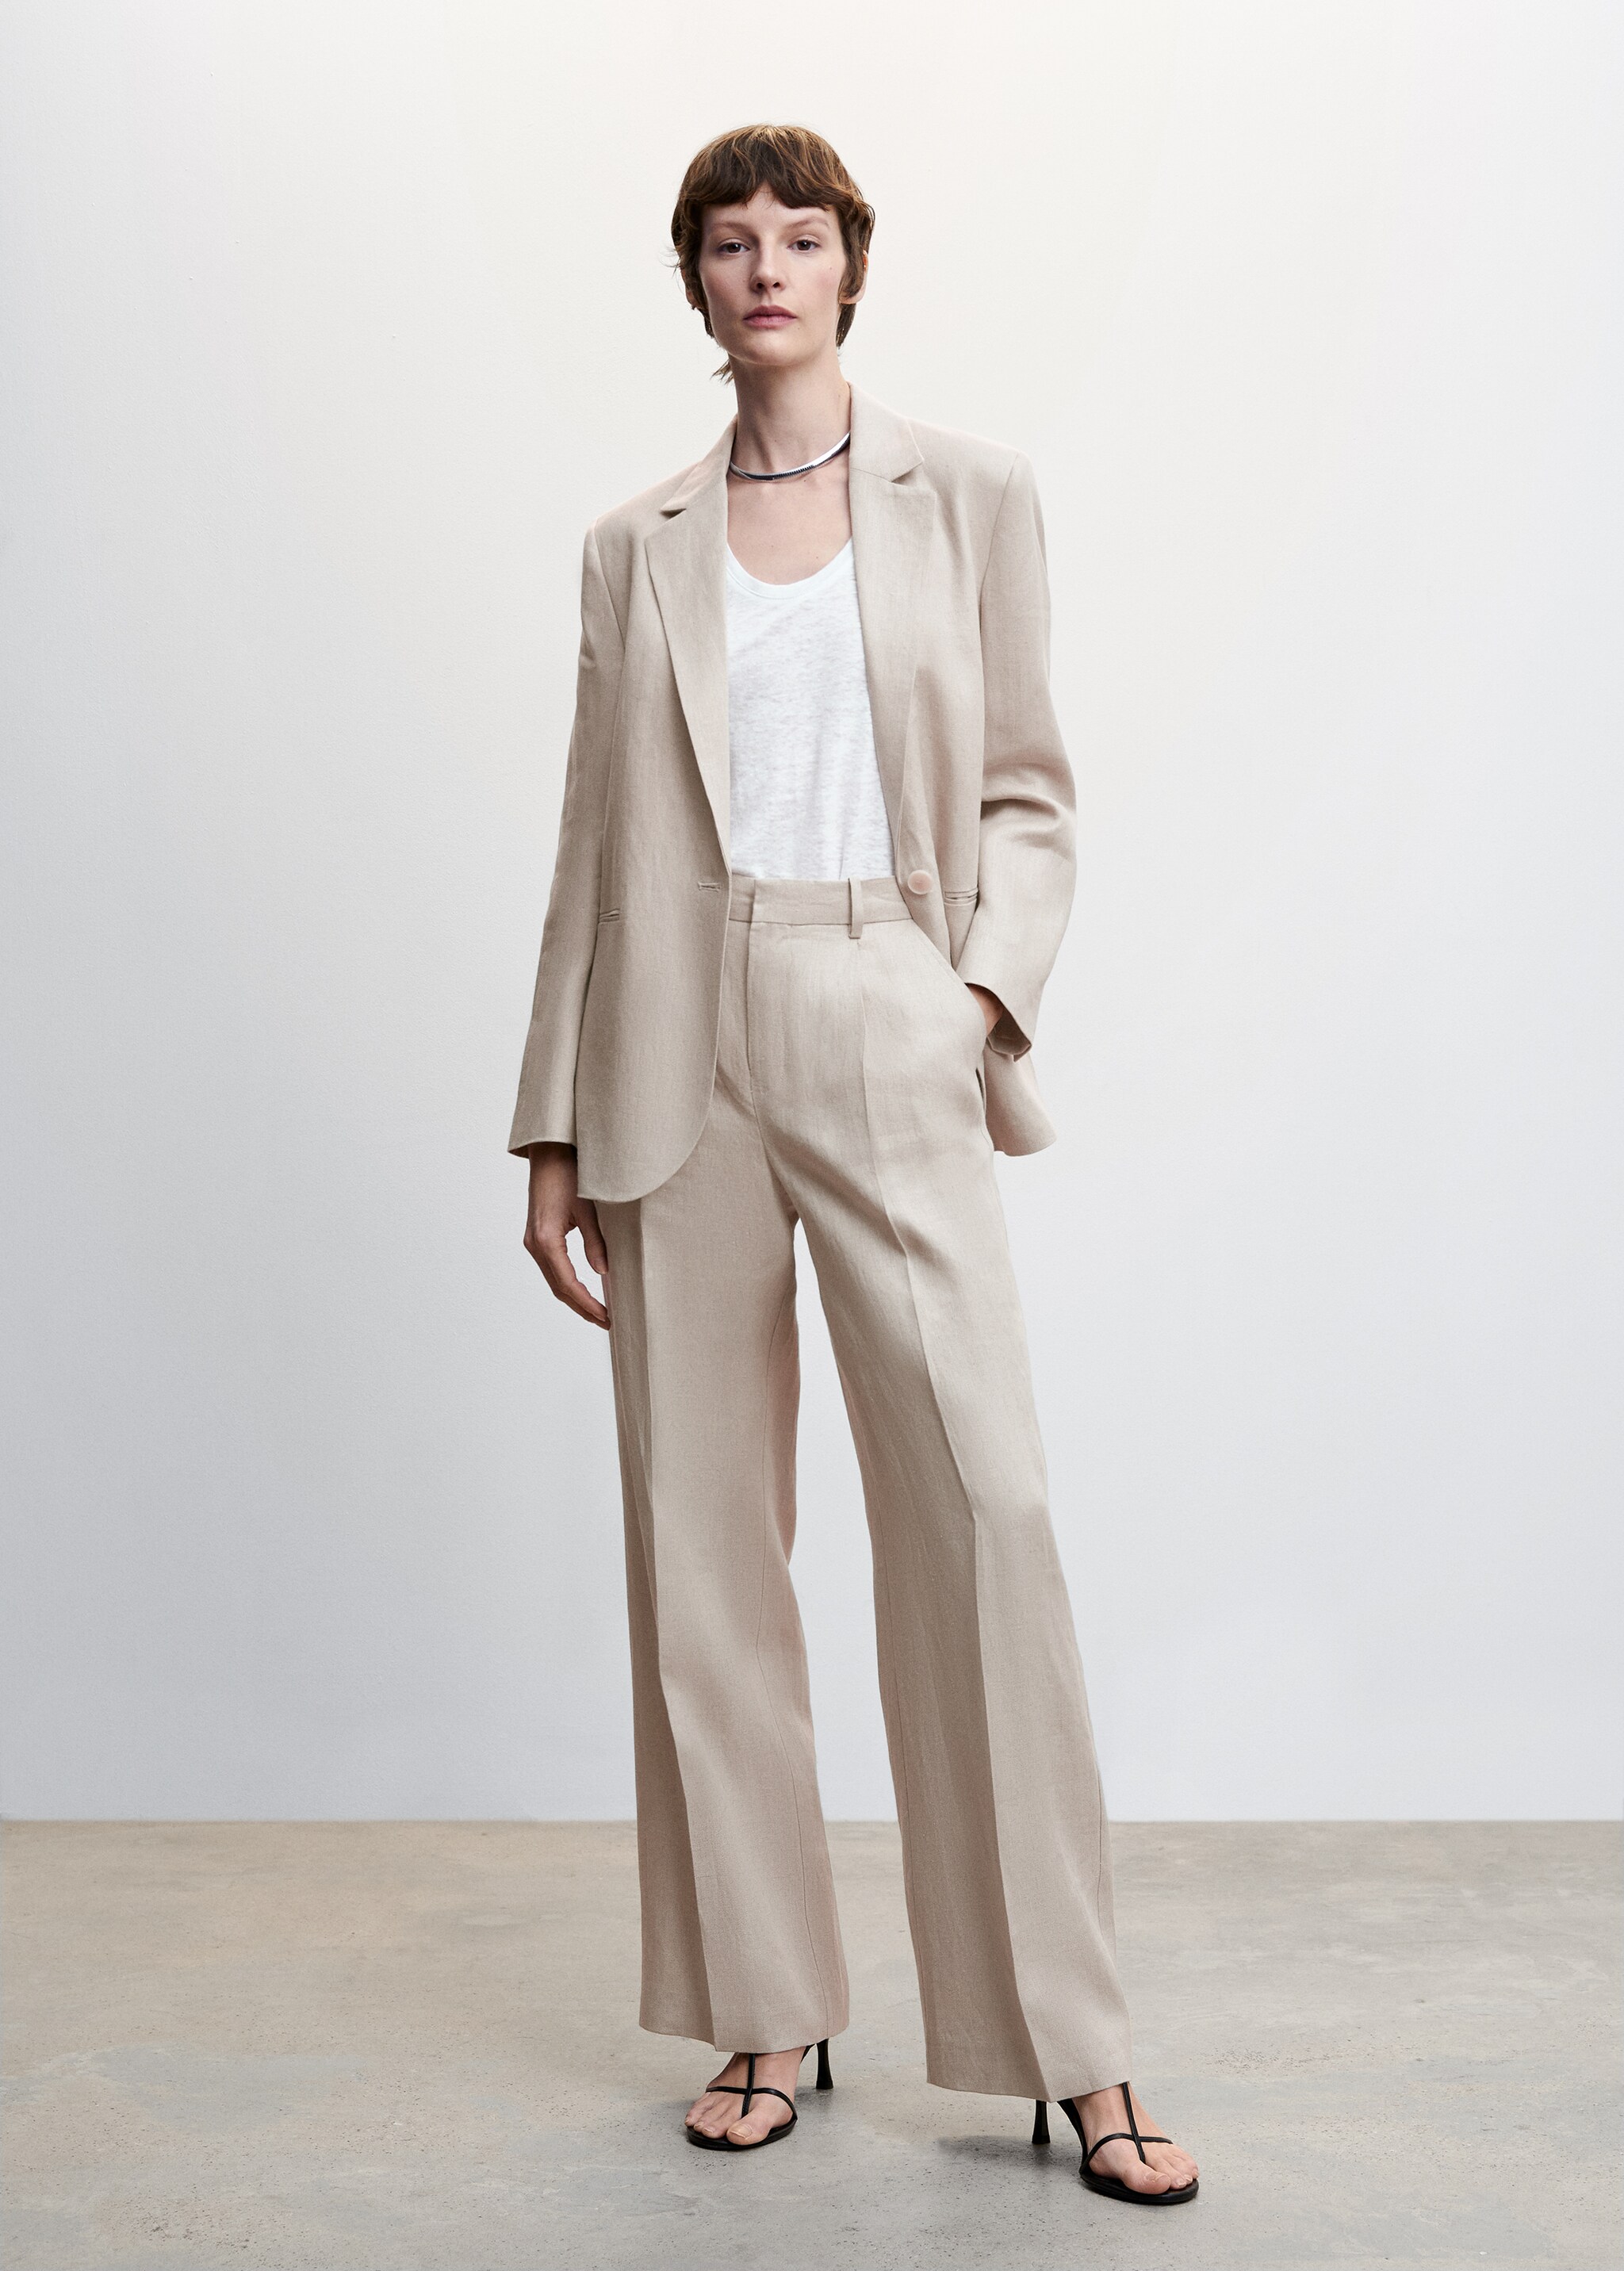 Linen suit trousers - General plane